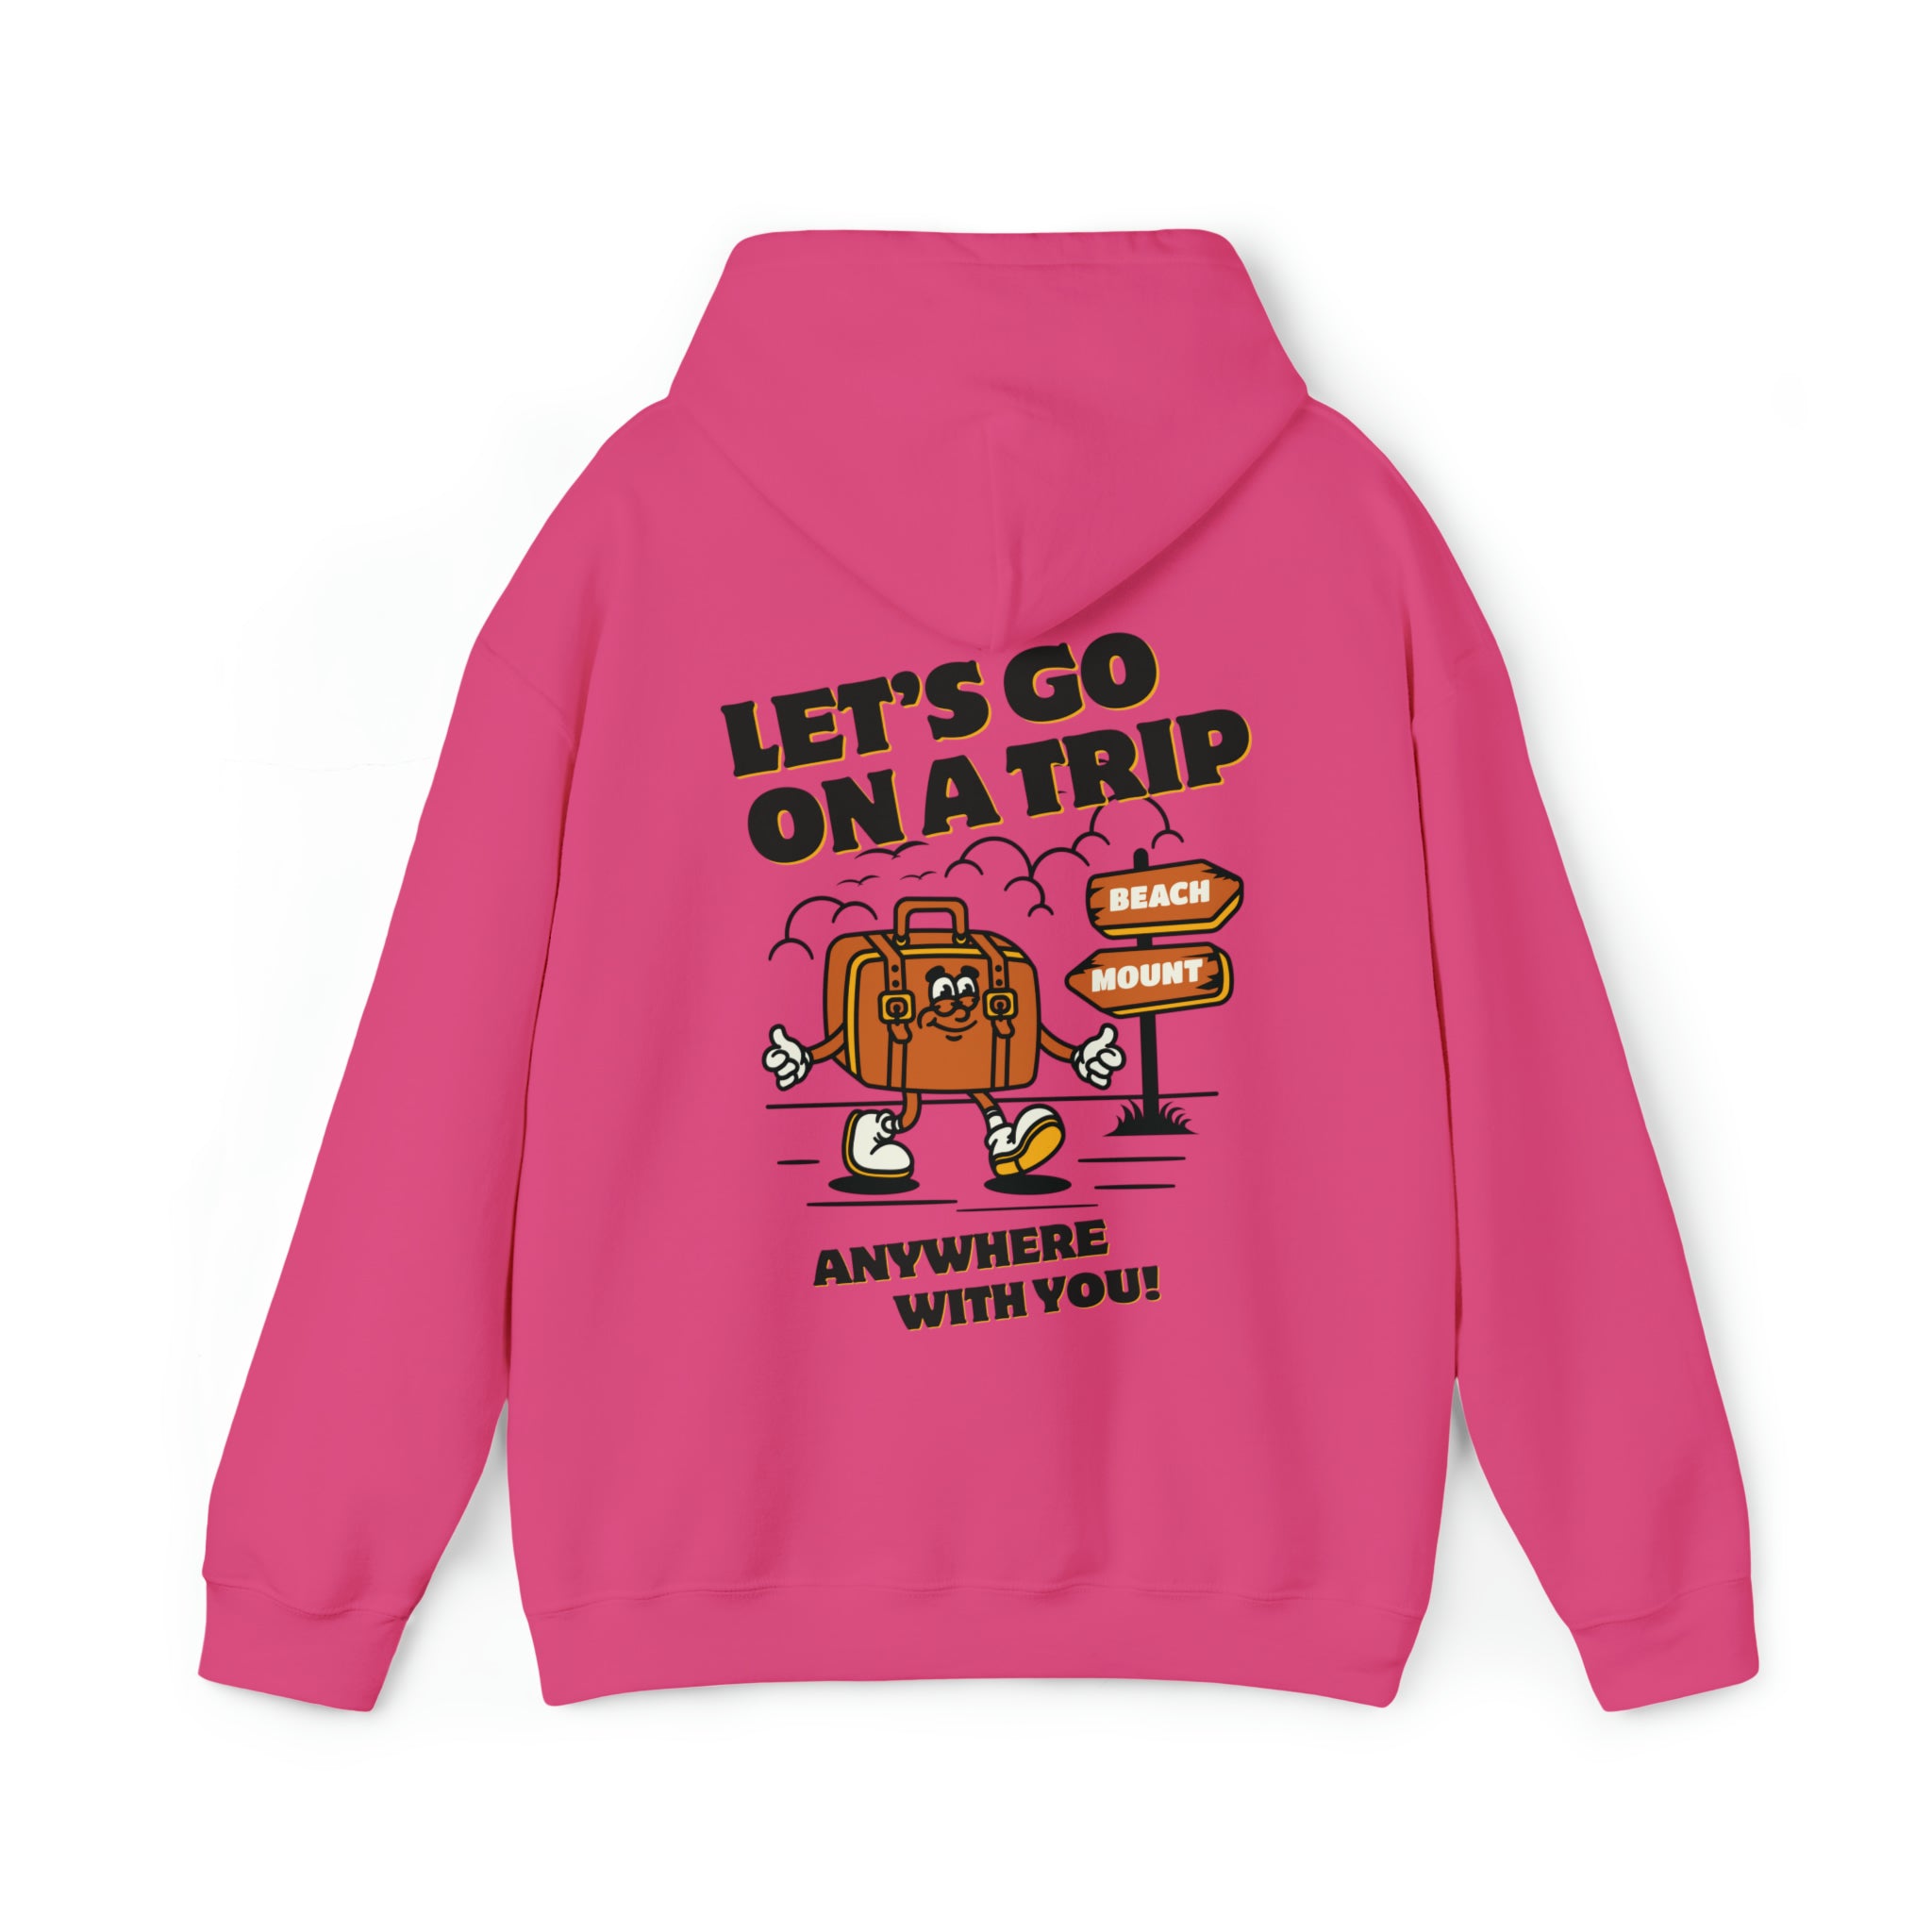 Let's Go on a Trip Cute Cartoon Hoodie Sweatshirt